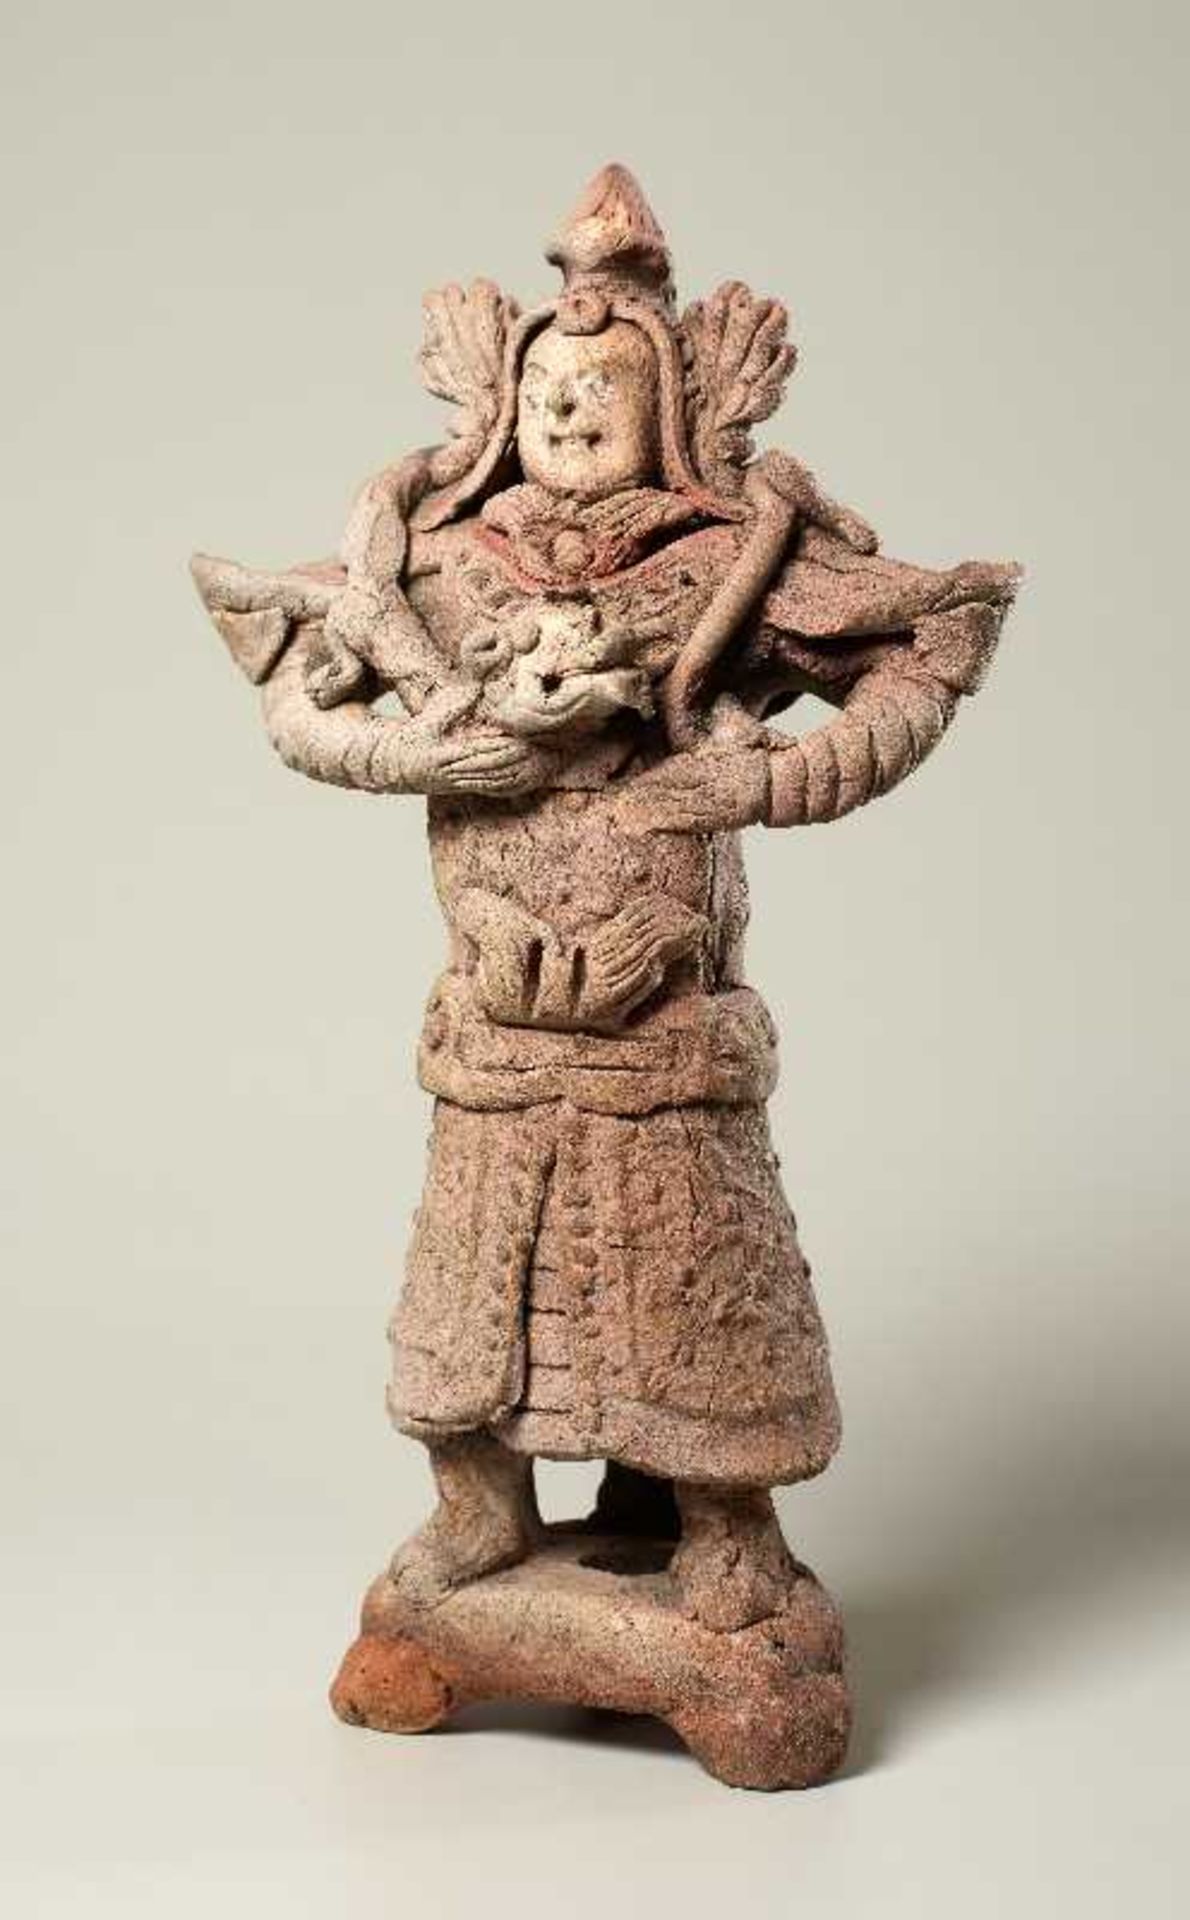 TRUTZIGER GRABWÄCHTER MIT SCHLANGE Terrakotta. China, Yuan-Dynastie (ca. 14. Jh.) Witzig geformt, - Image 2 of 6